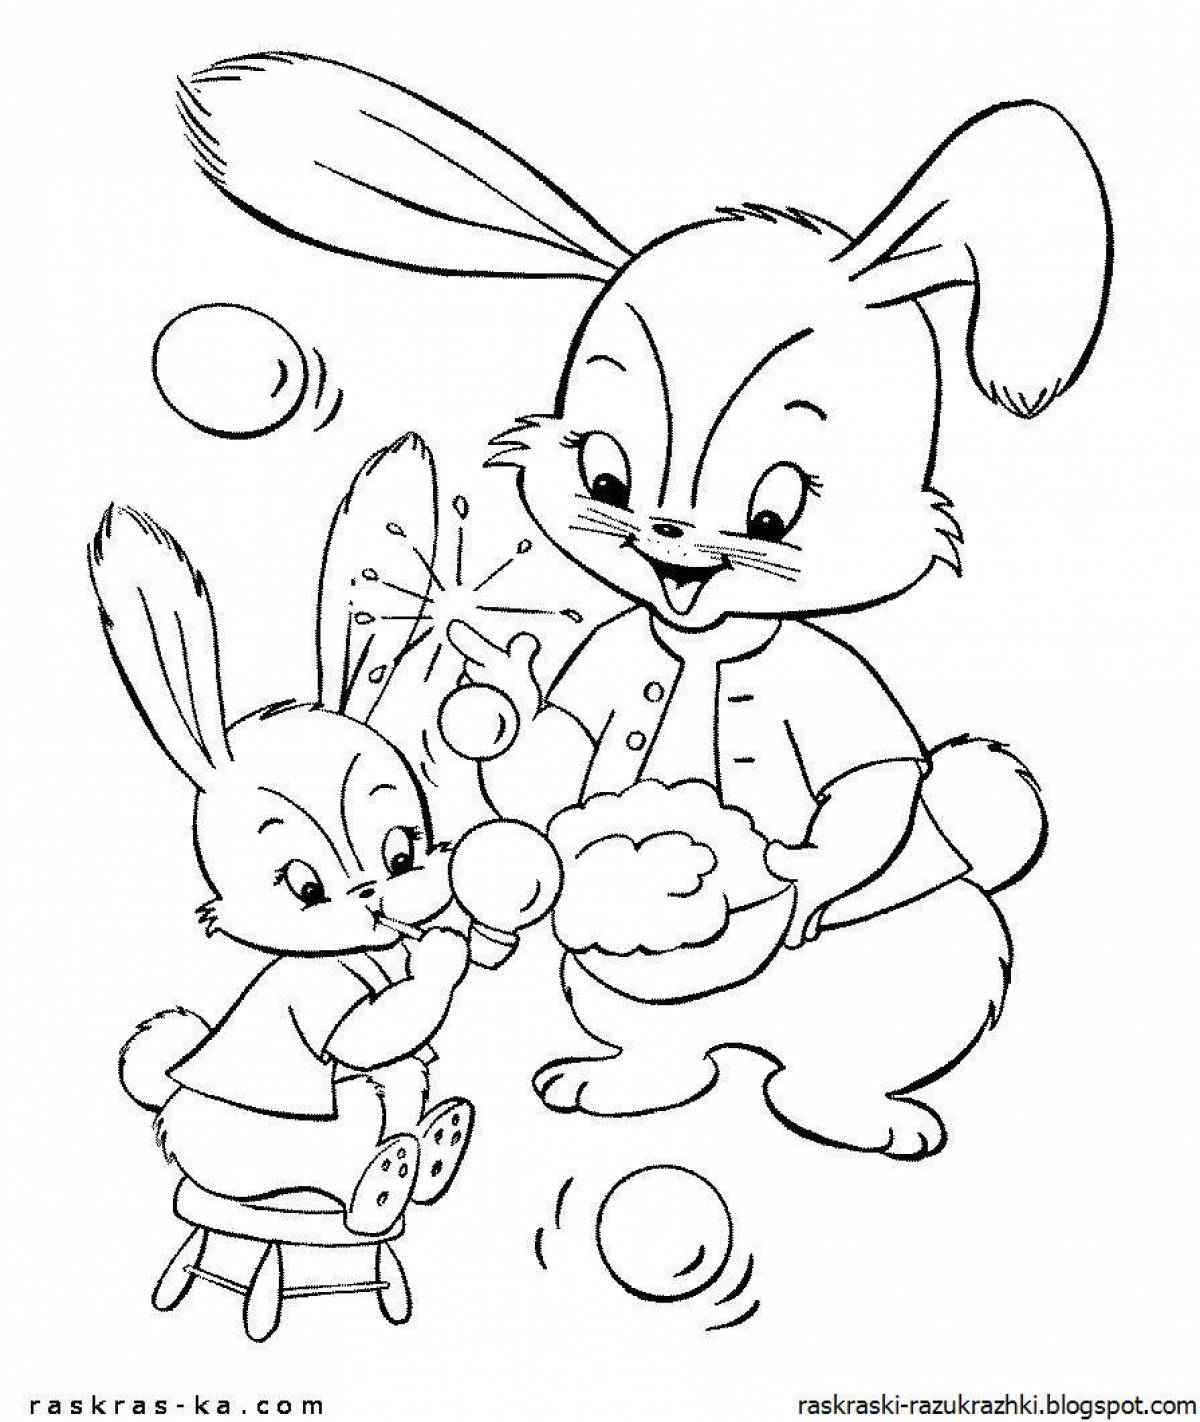 Остроумная раскраска кролика для детей